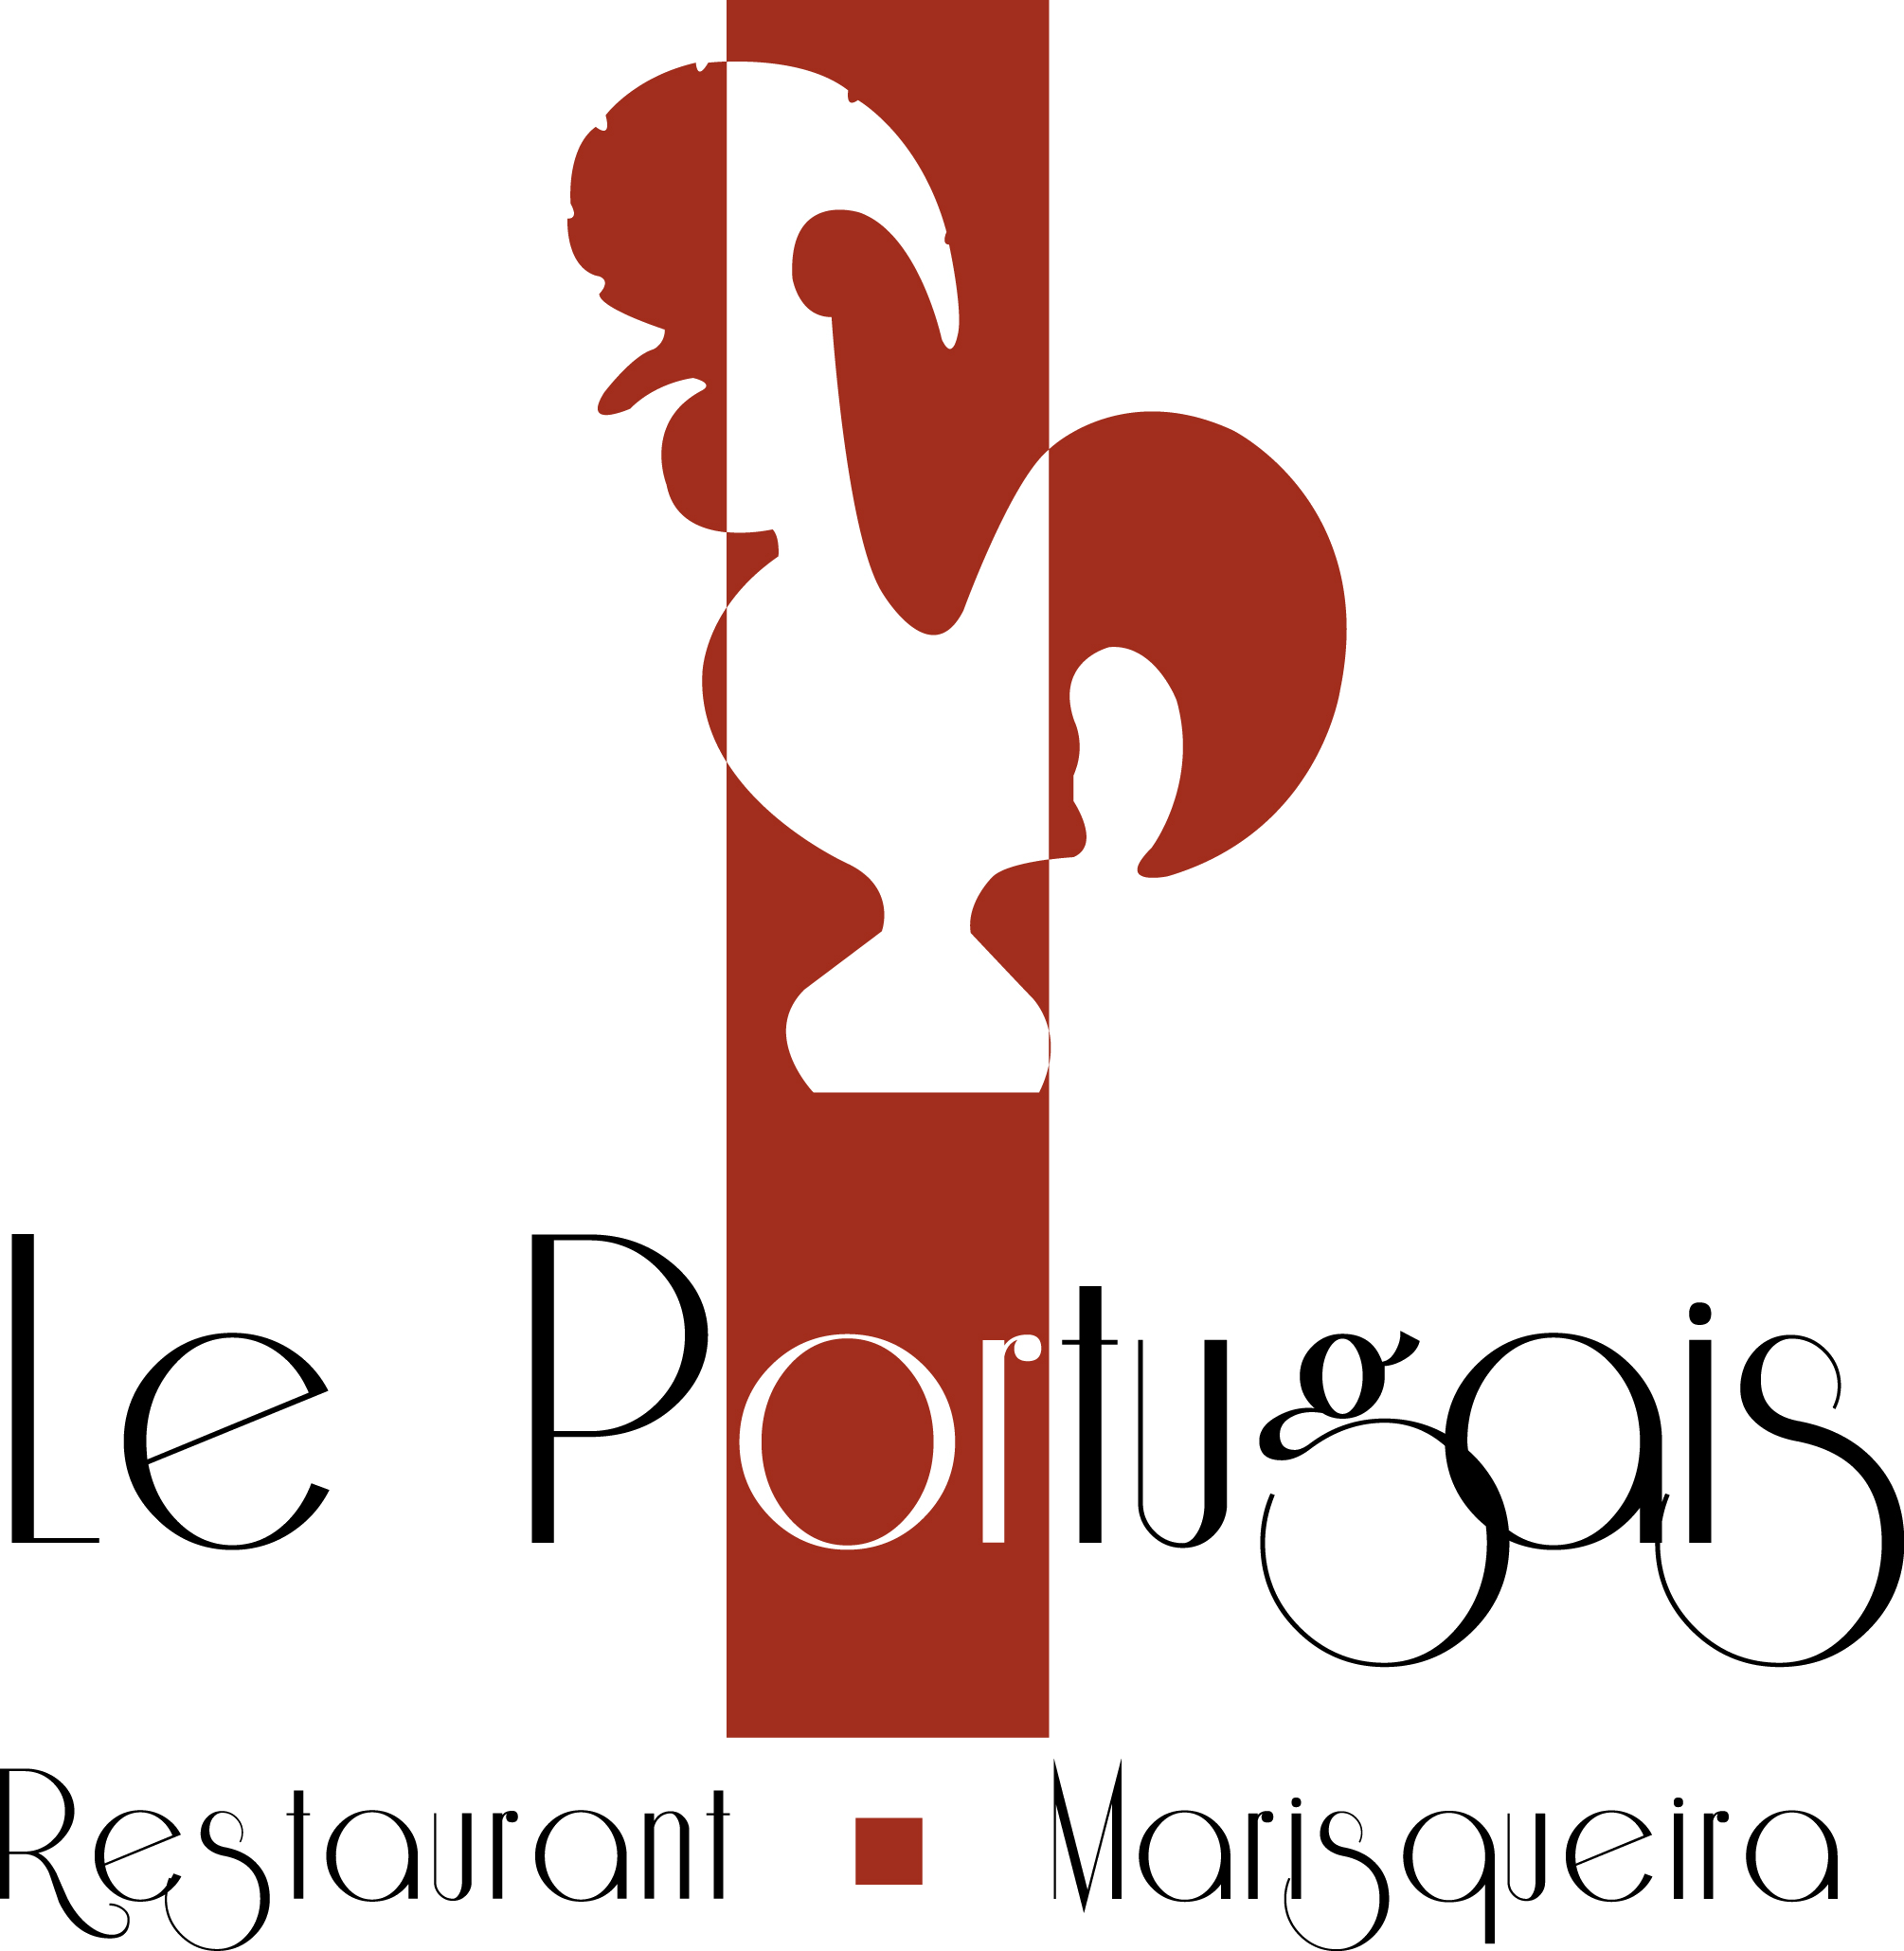 Le Restaurant Le Portugais situé à Plainpalais au cœur de Genève vous accueille dans une ambiance conviviale pour déguster des spécialités portugaises.